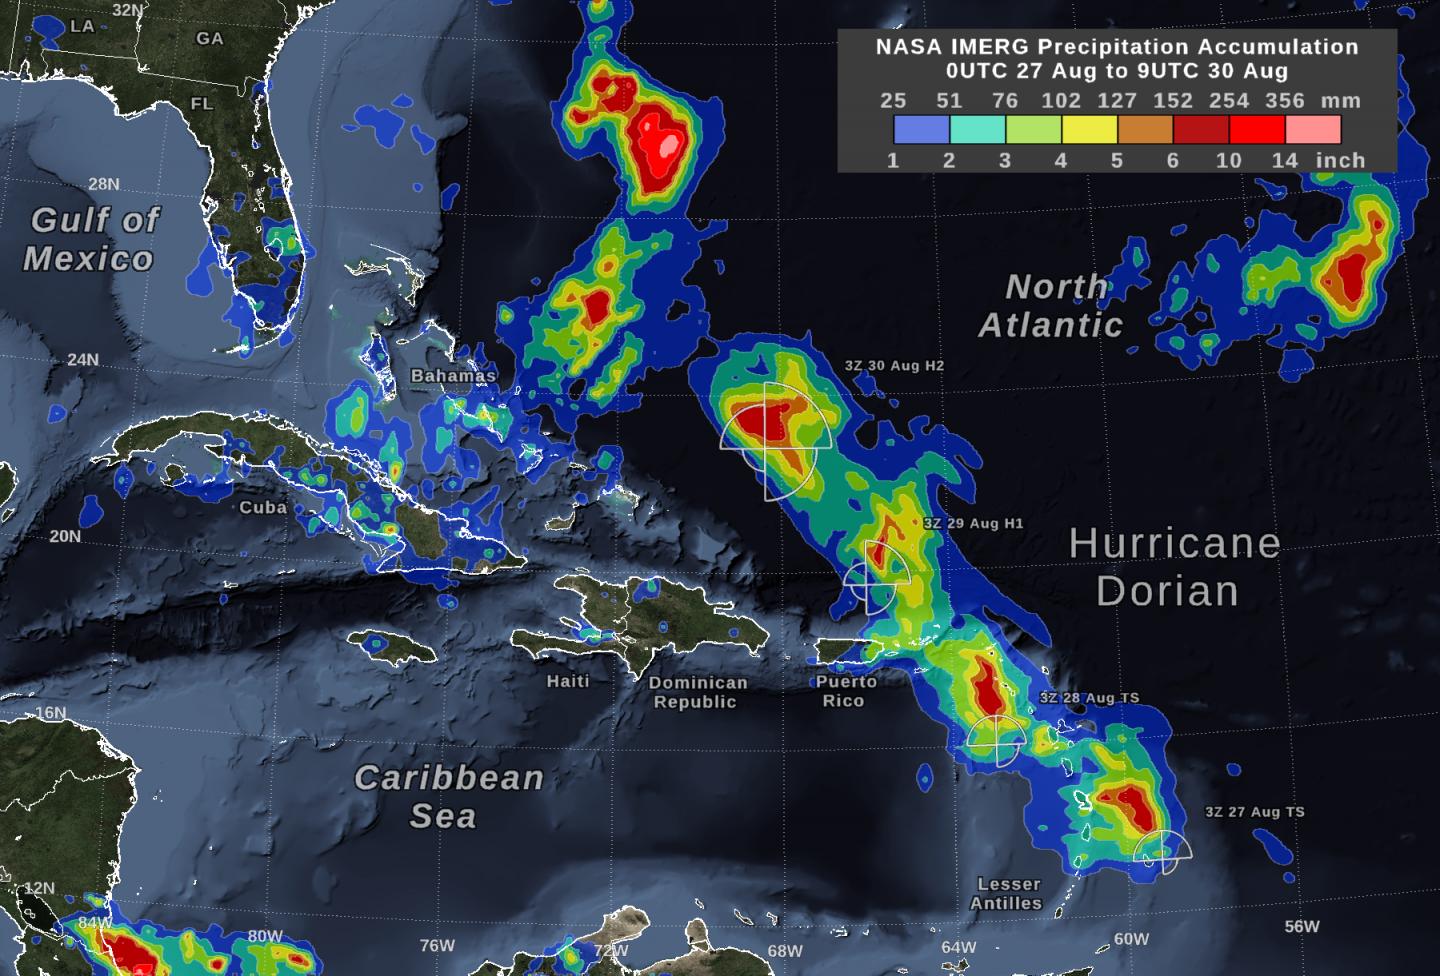 GPM'S IMERG data on Hurricane Dorian